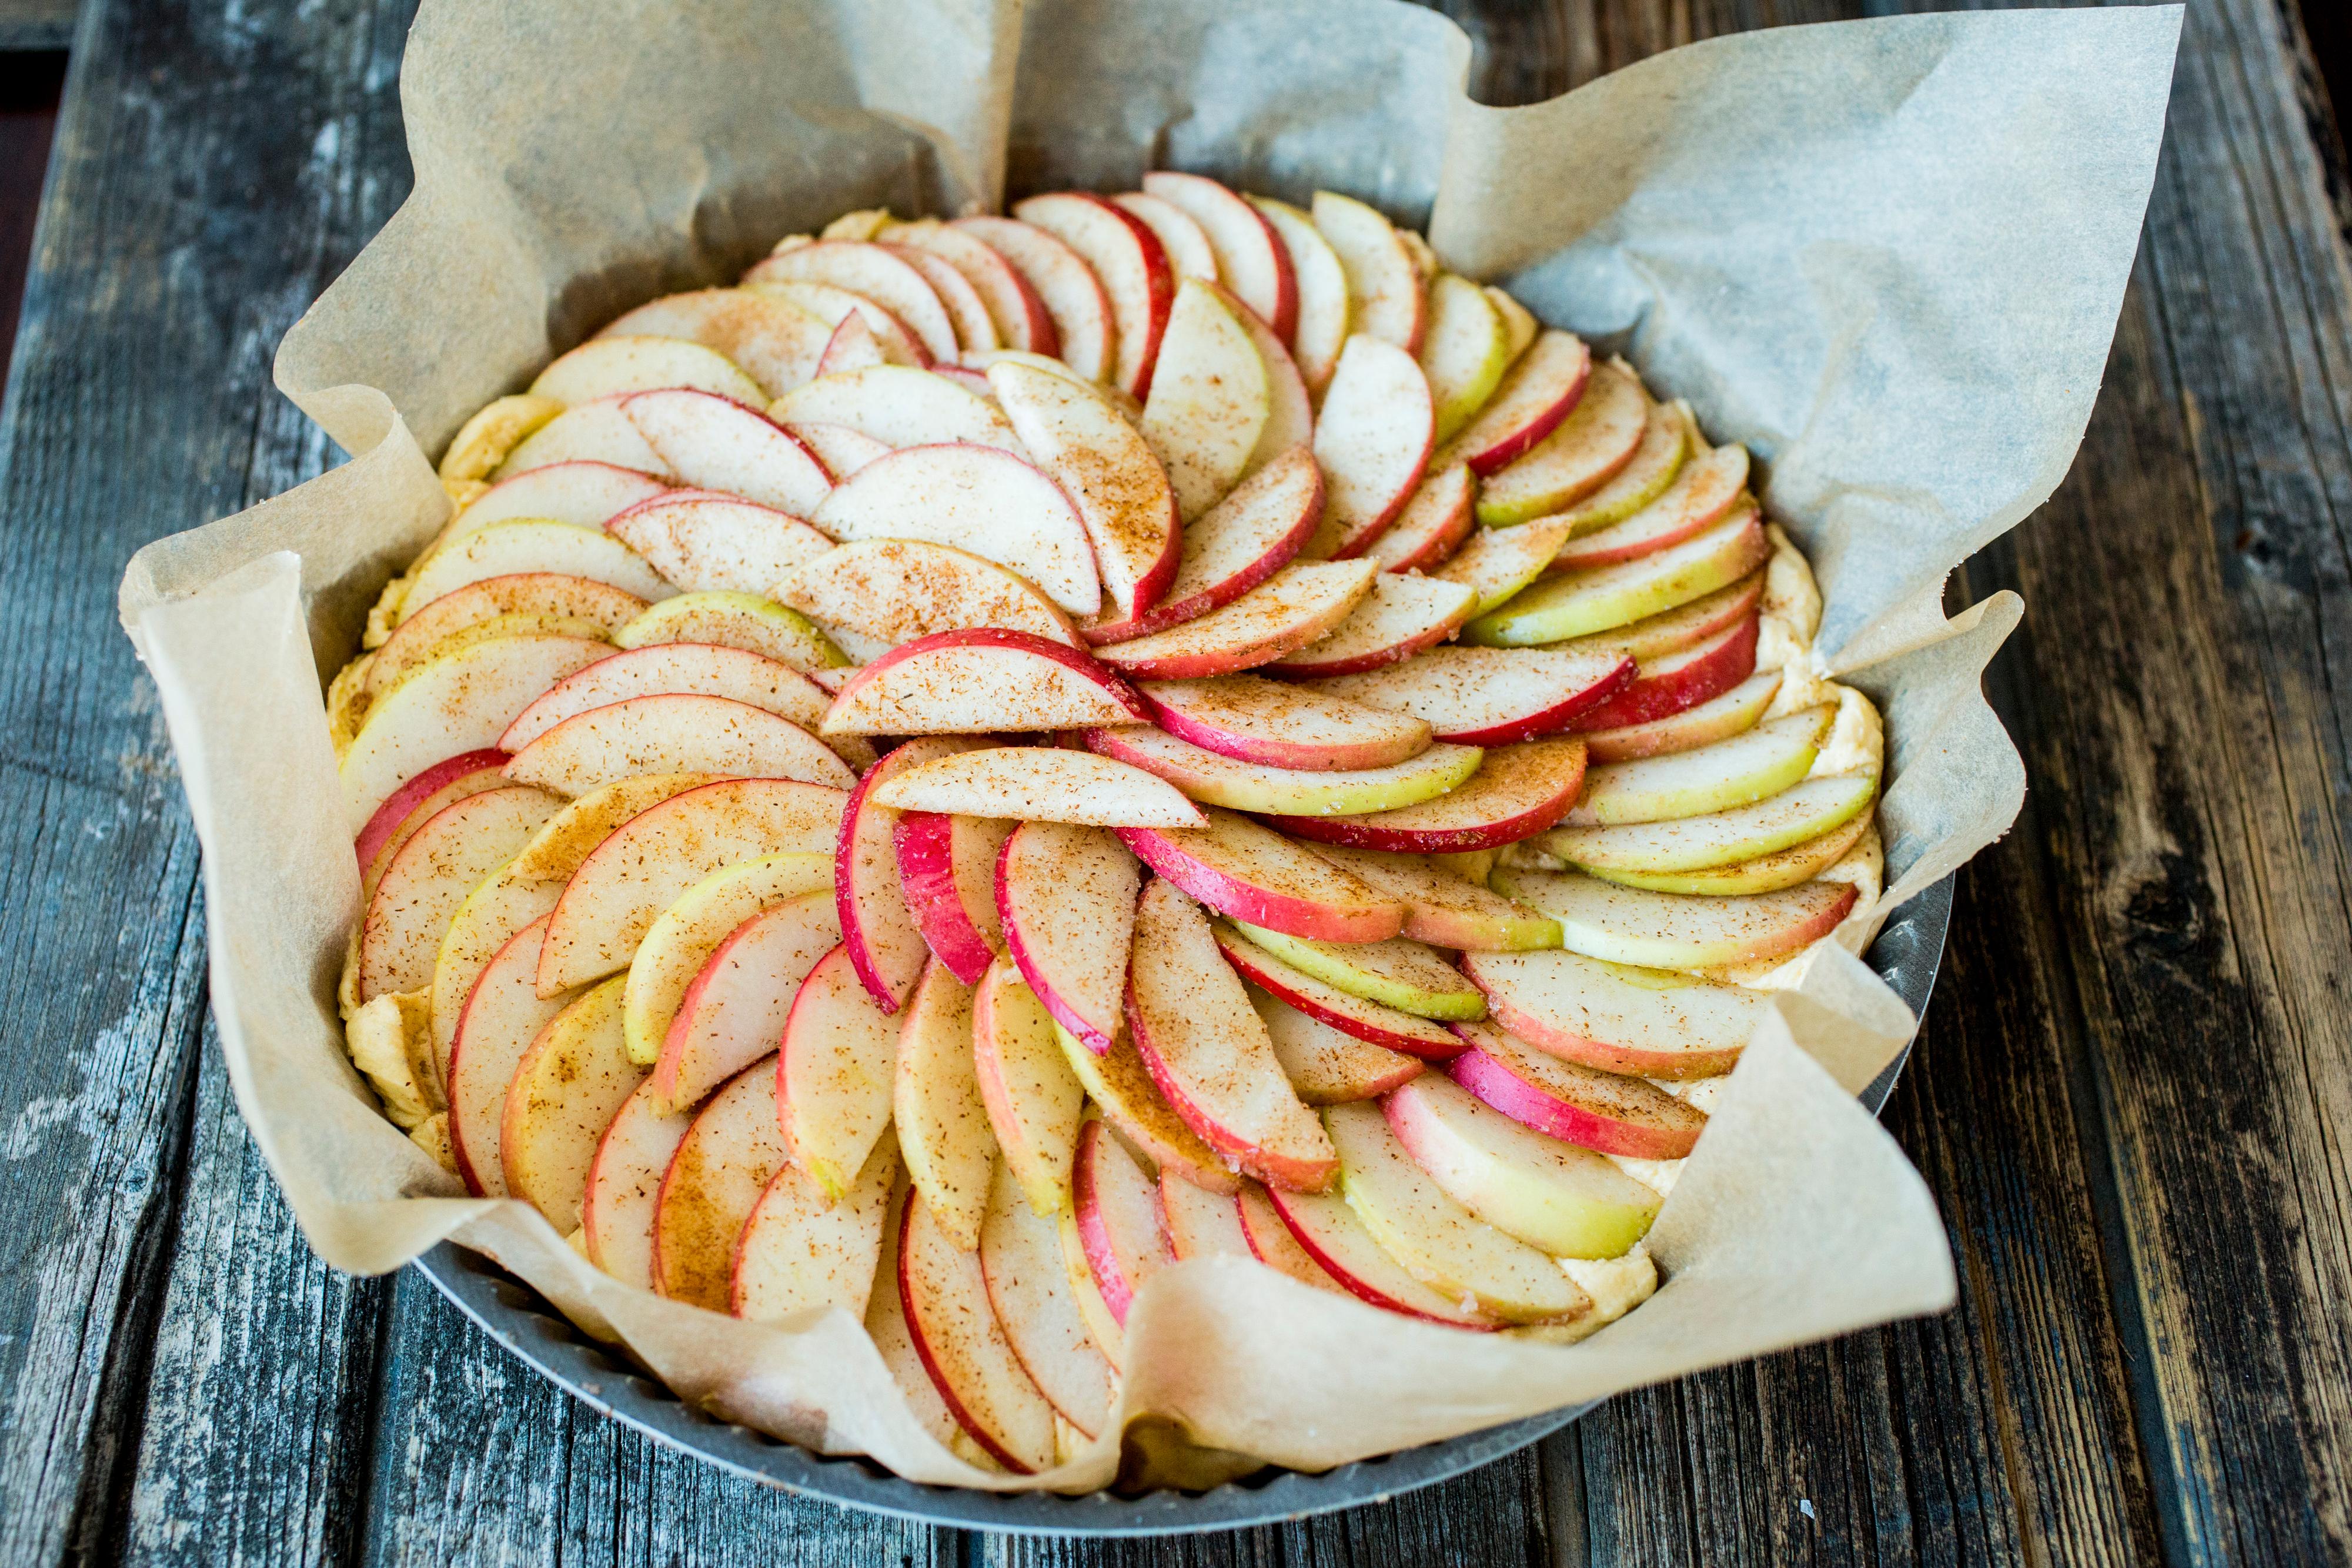 Skrell eplene og skjær dem i tynne skiver. Vend skivene sammen med sukker og kanel og fordel epleskivene jevnt utover kakerøren.